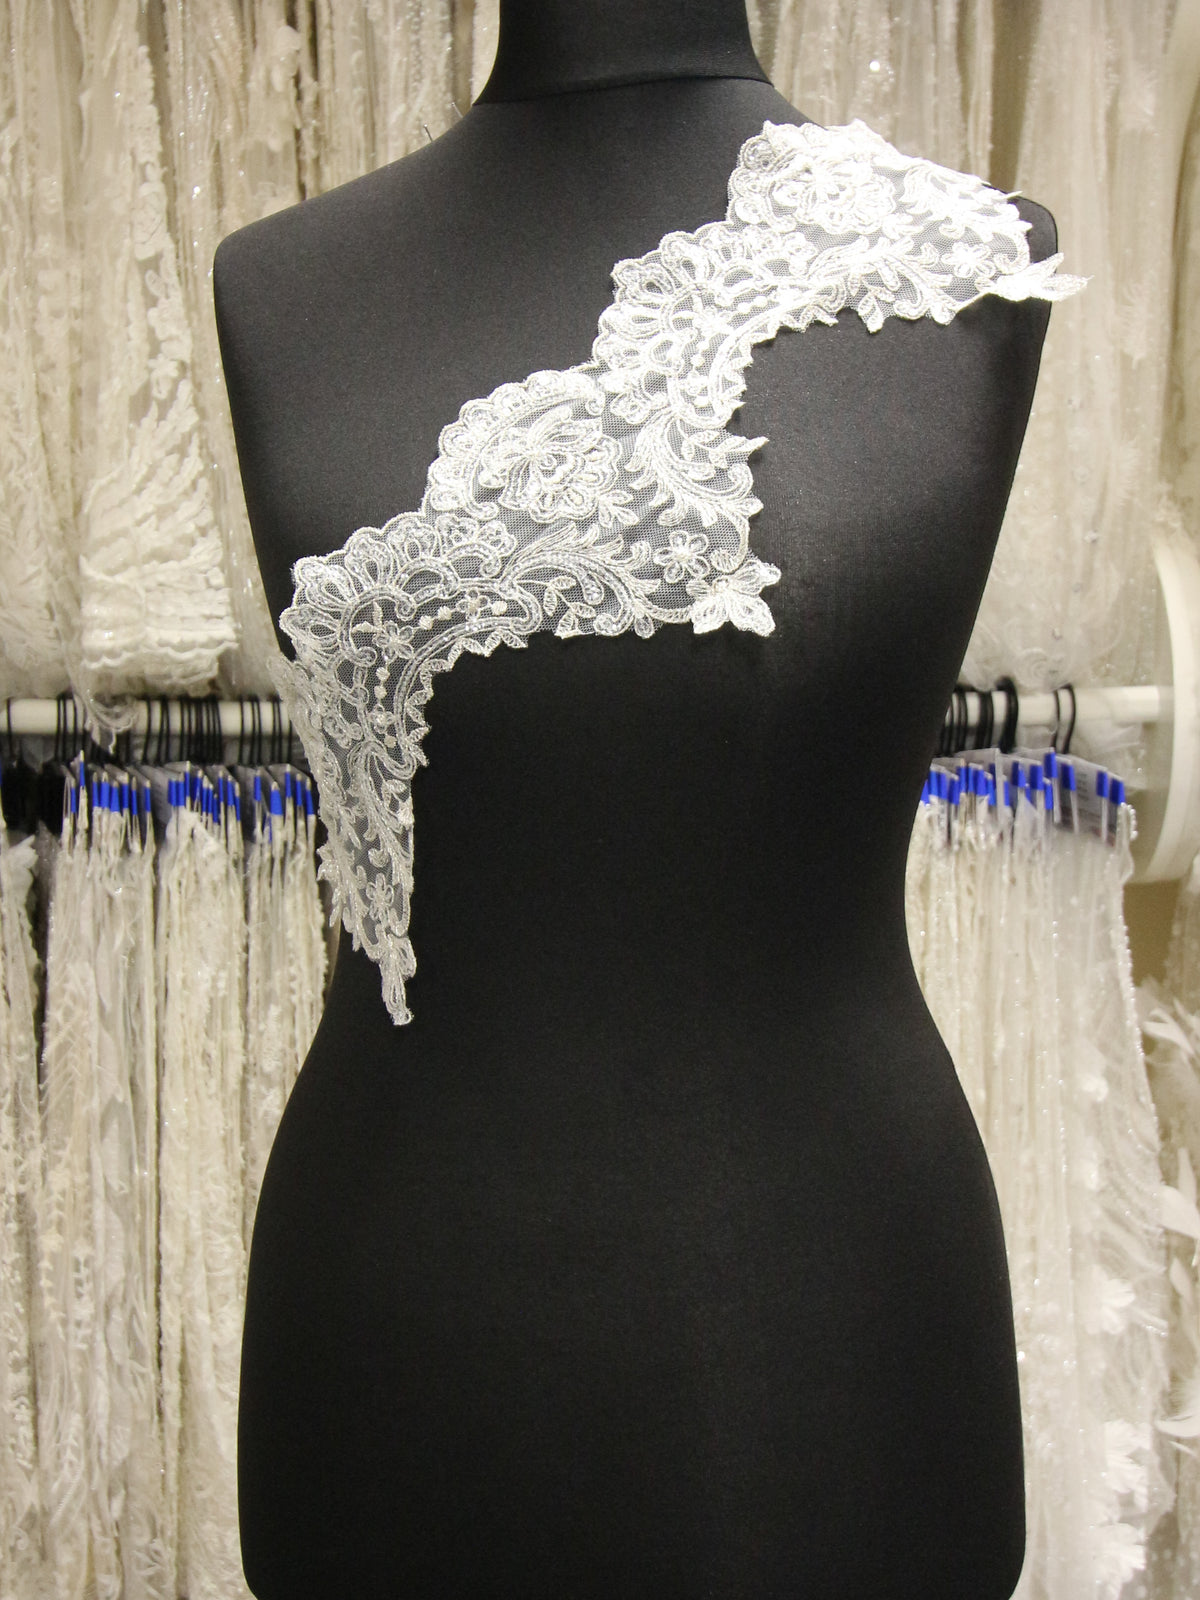 Sequin Trim for Bridalwear : Wedding Dress - Bridal Fabrics